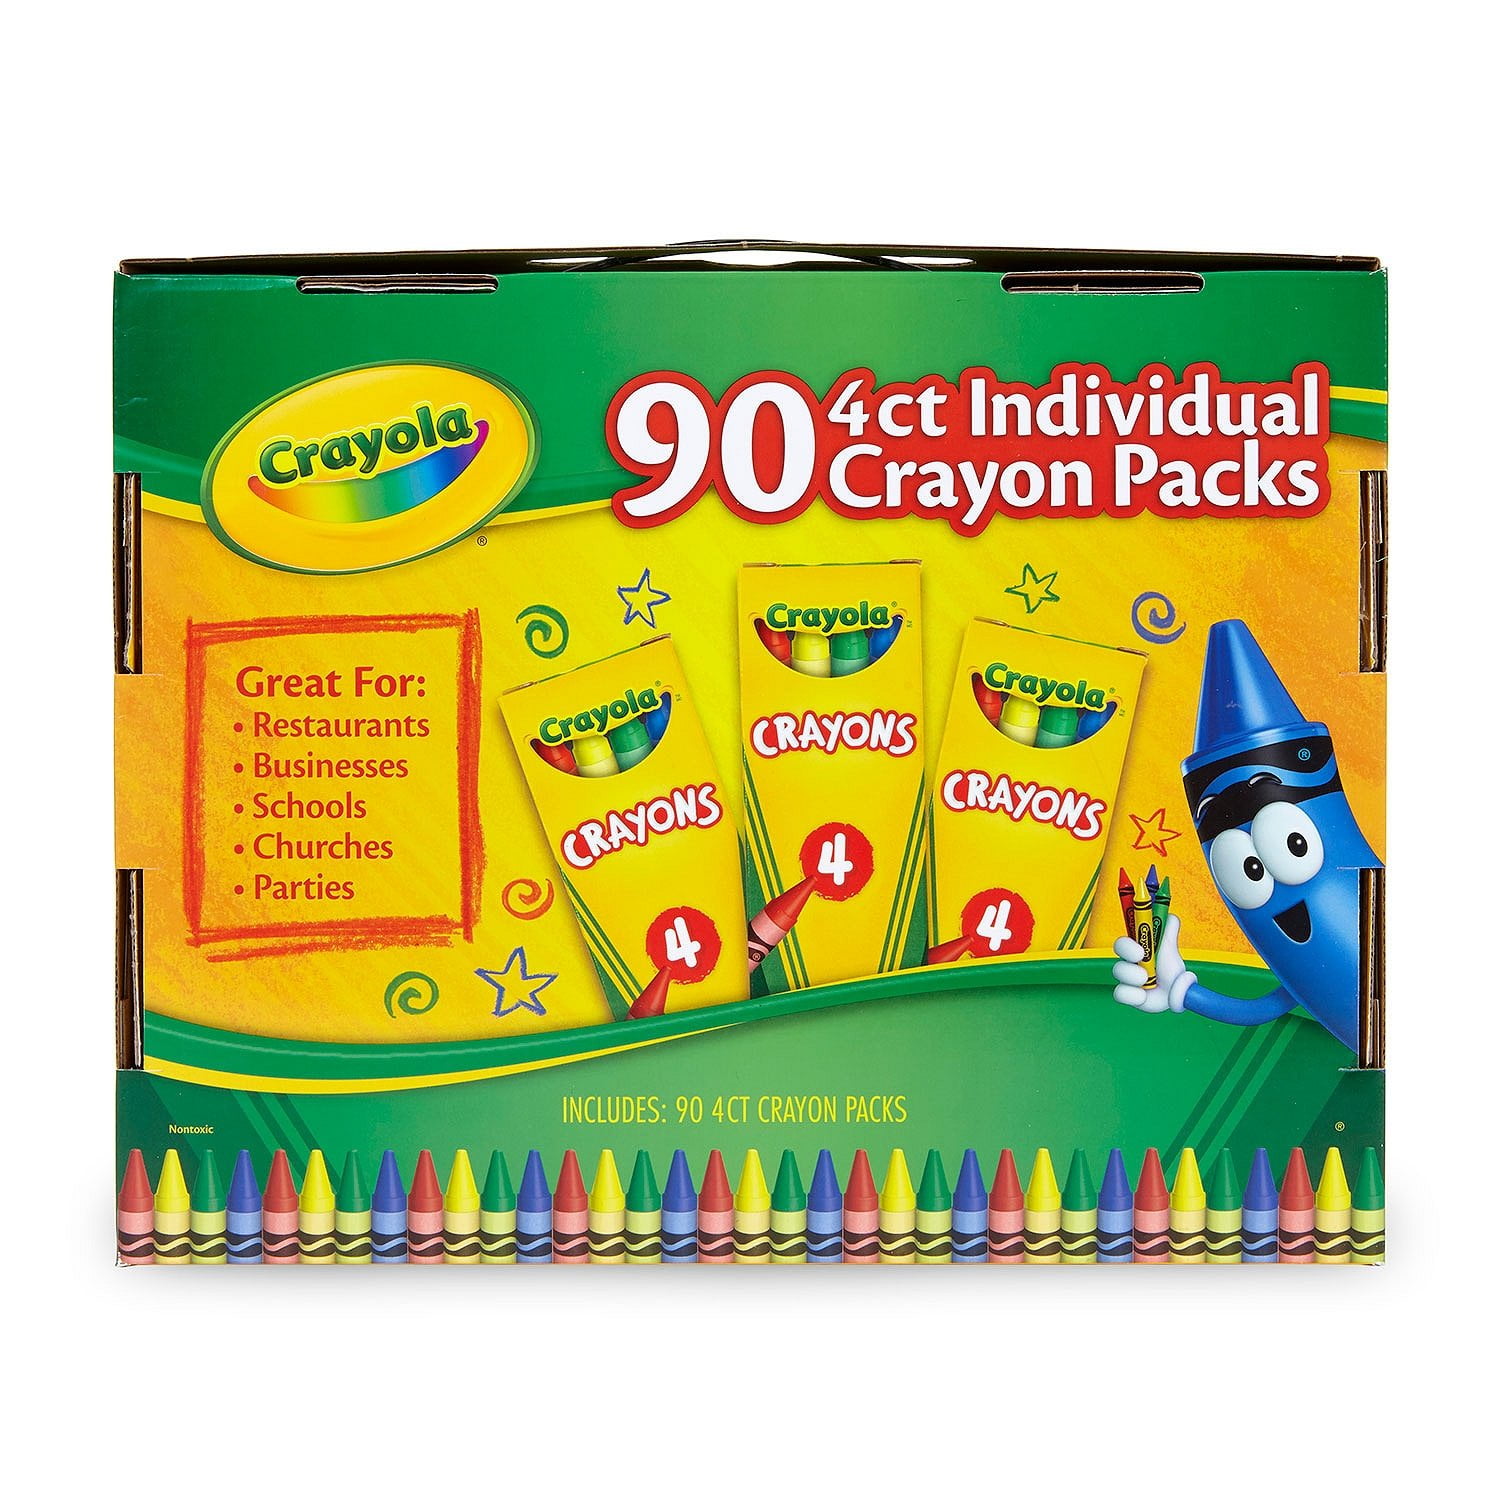 10 Crayola 4ct individual Crayon Packs Crayola Party Favors School Supplies 